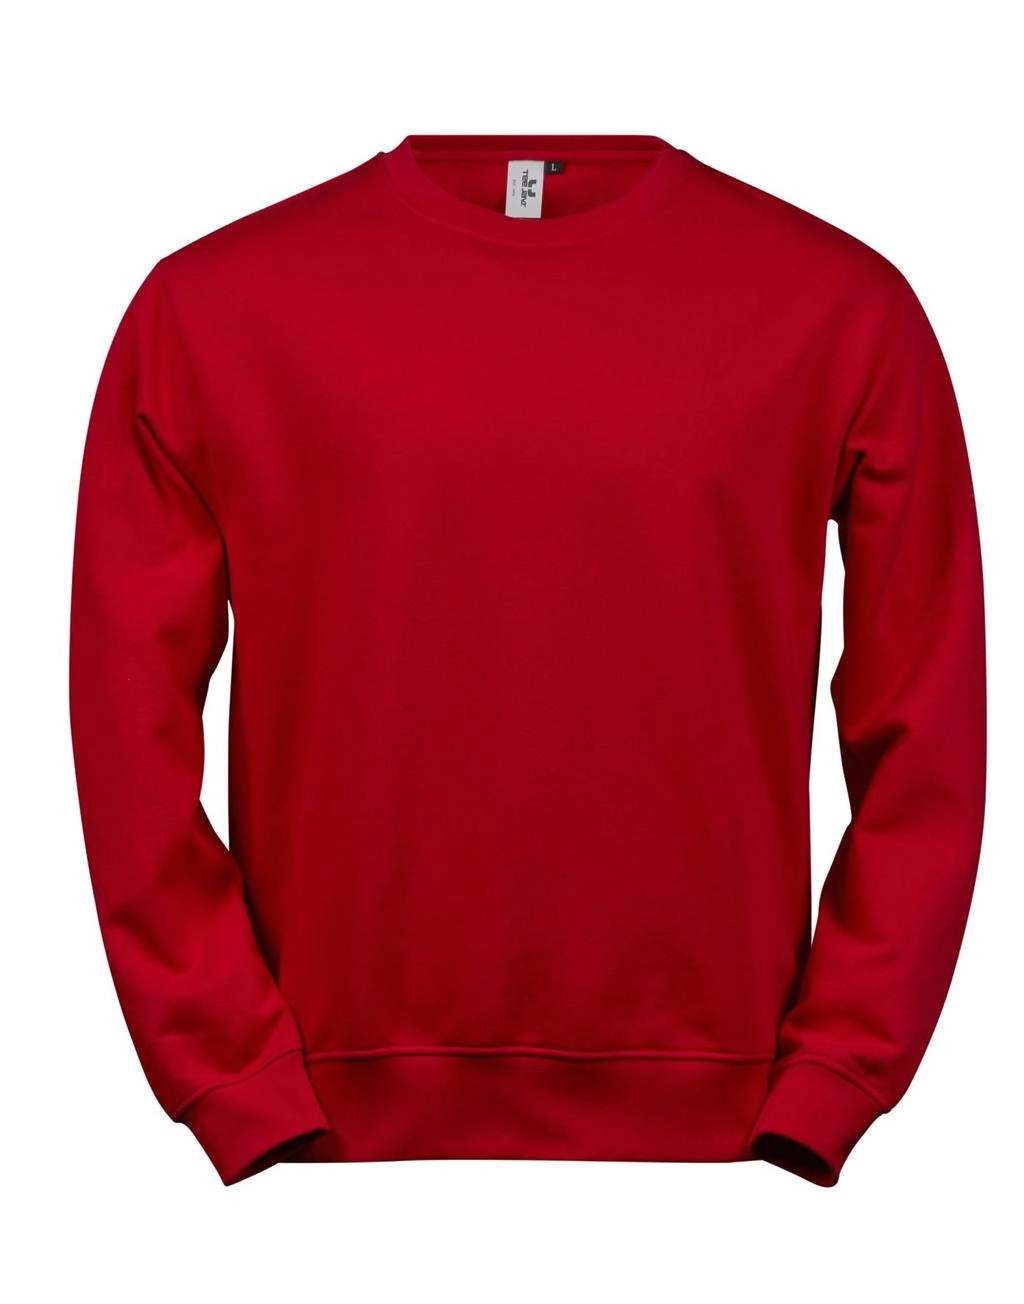 Power Sweatshirt zum Besticken und Bedrucken in der Farbe Red mit Ihren Logo, Schriftzug oder Motiv.